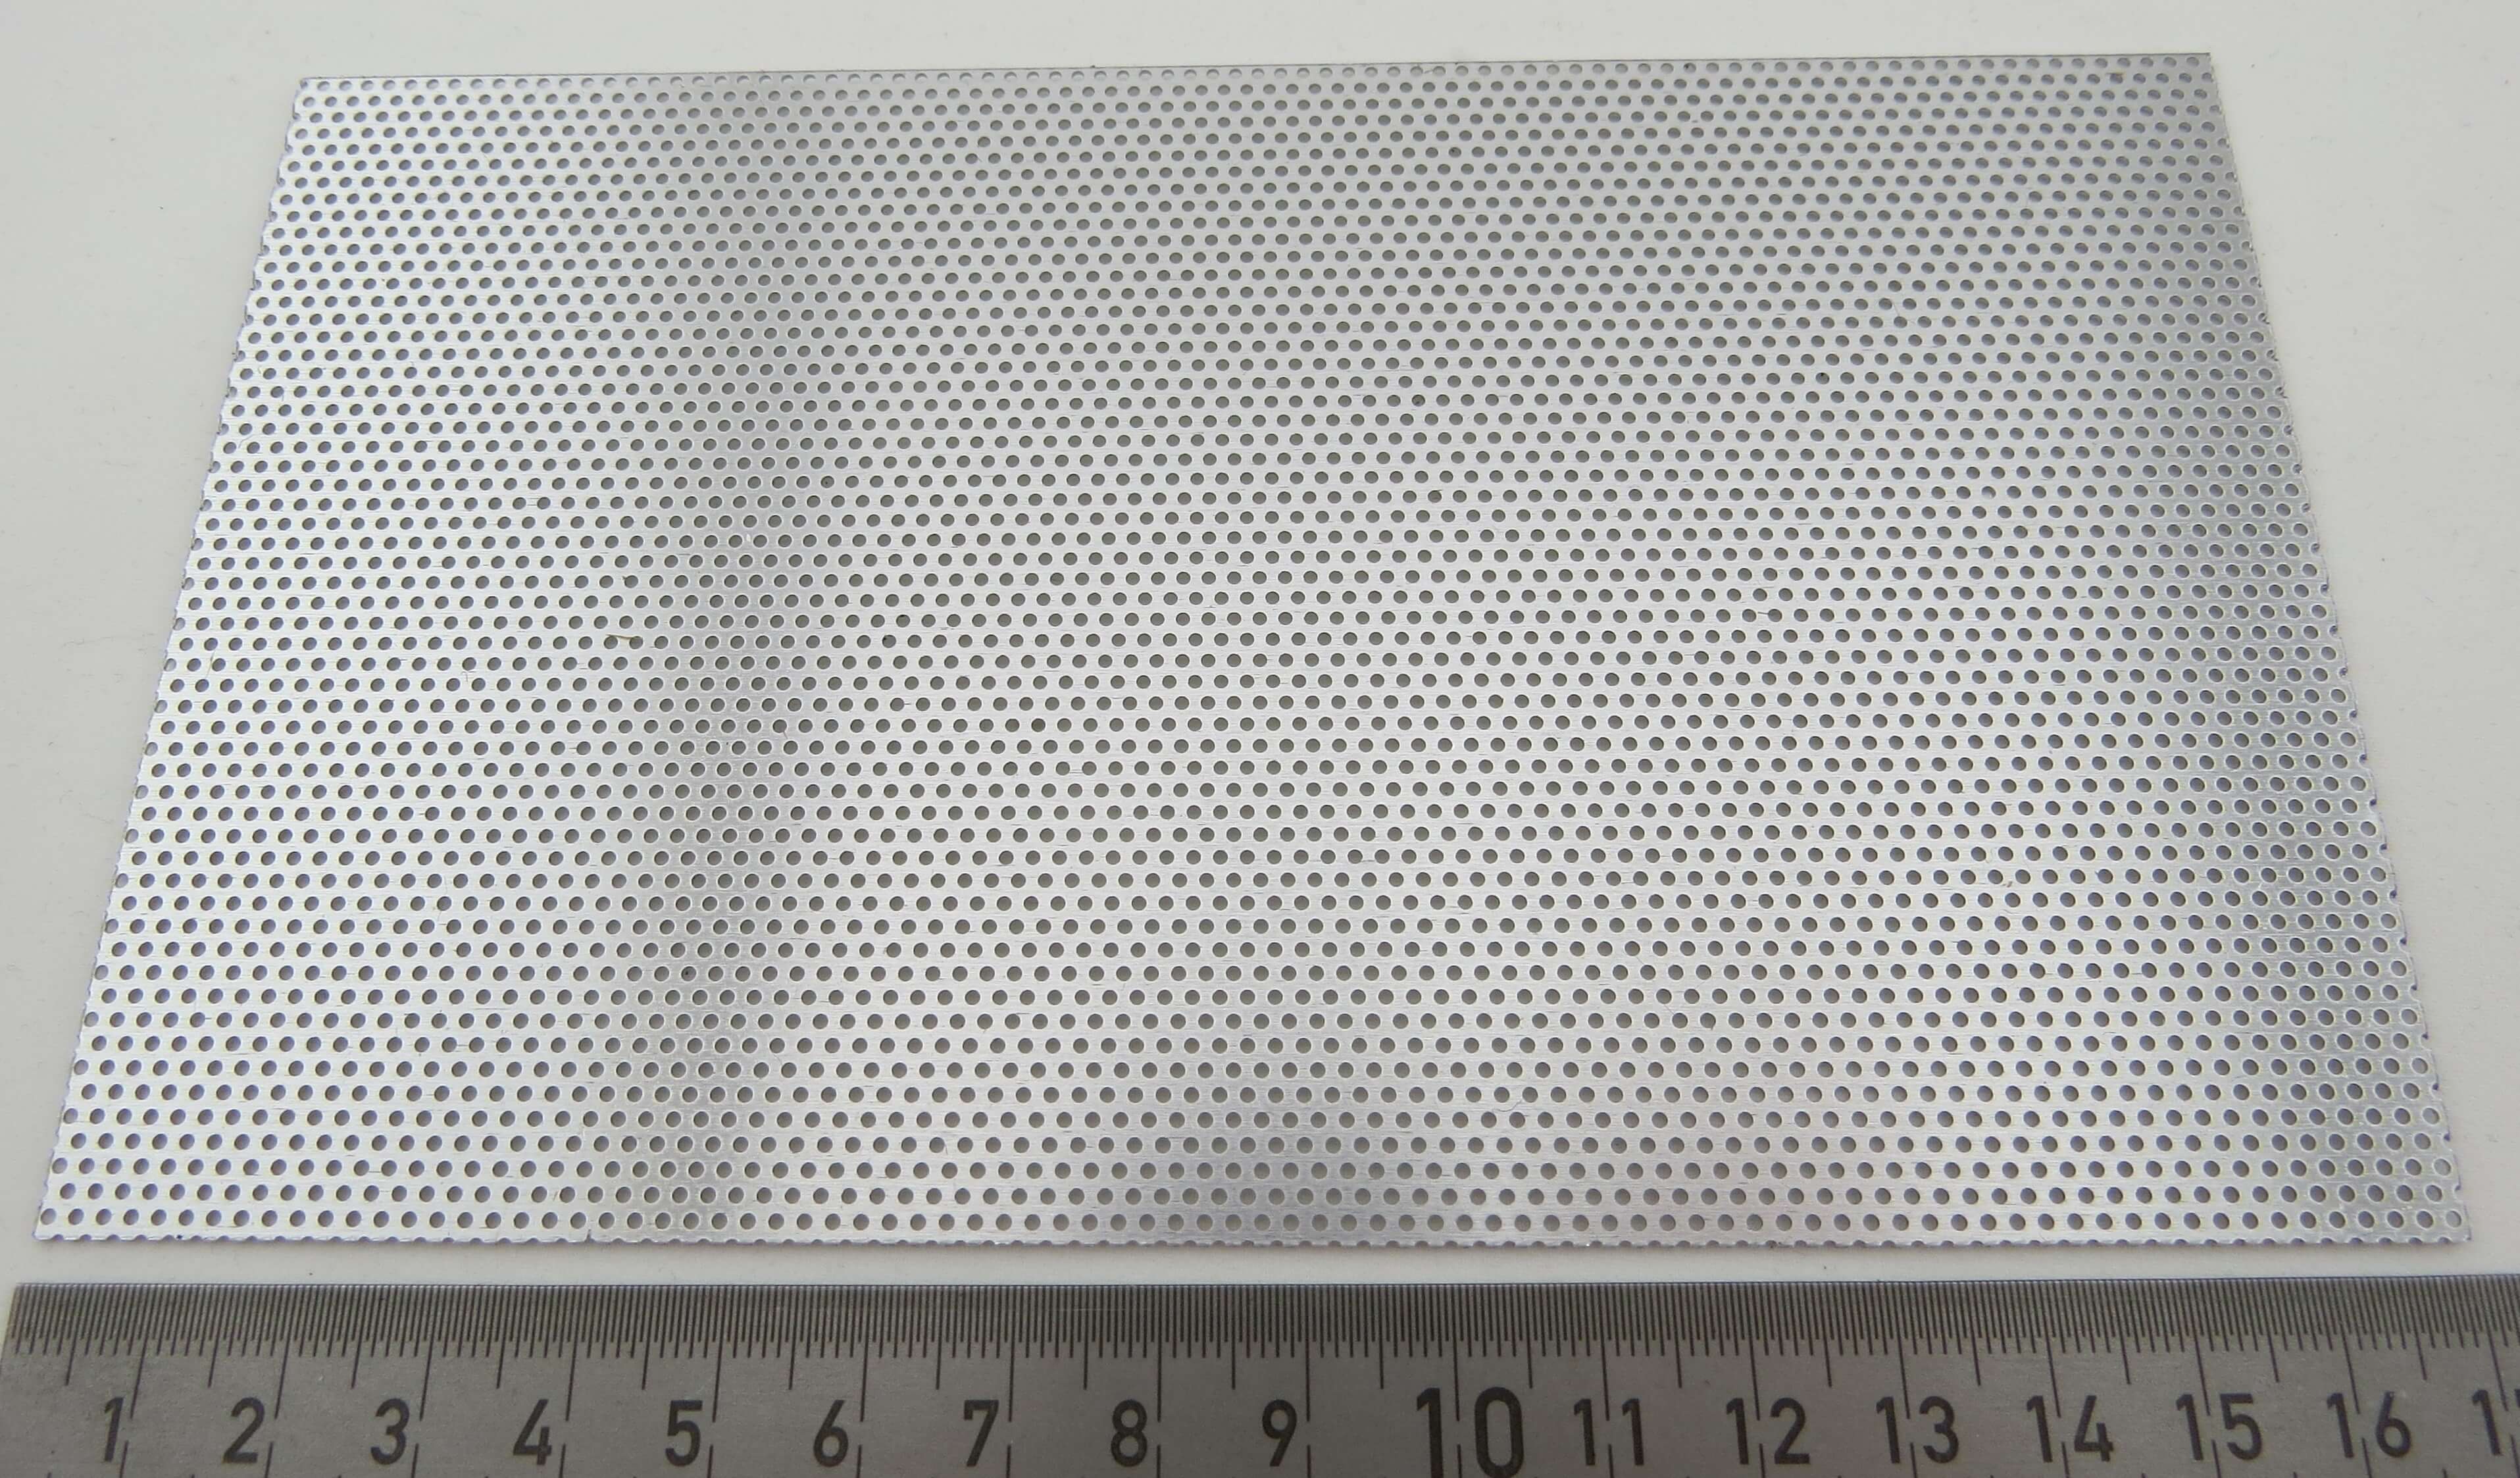 1 Tafel Lochblech, Alu. Lochung 1,1mm. Größe ca. 165x100mm, Zierbleche, Bleche, Material